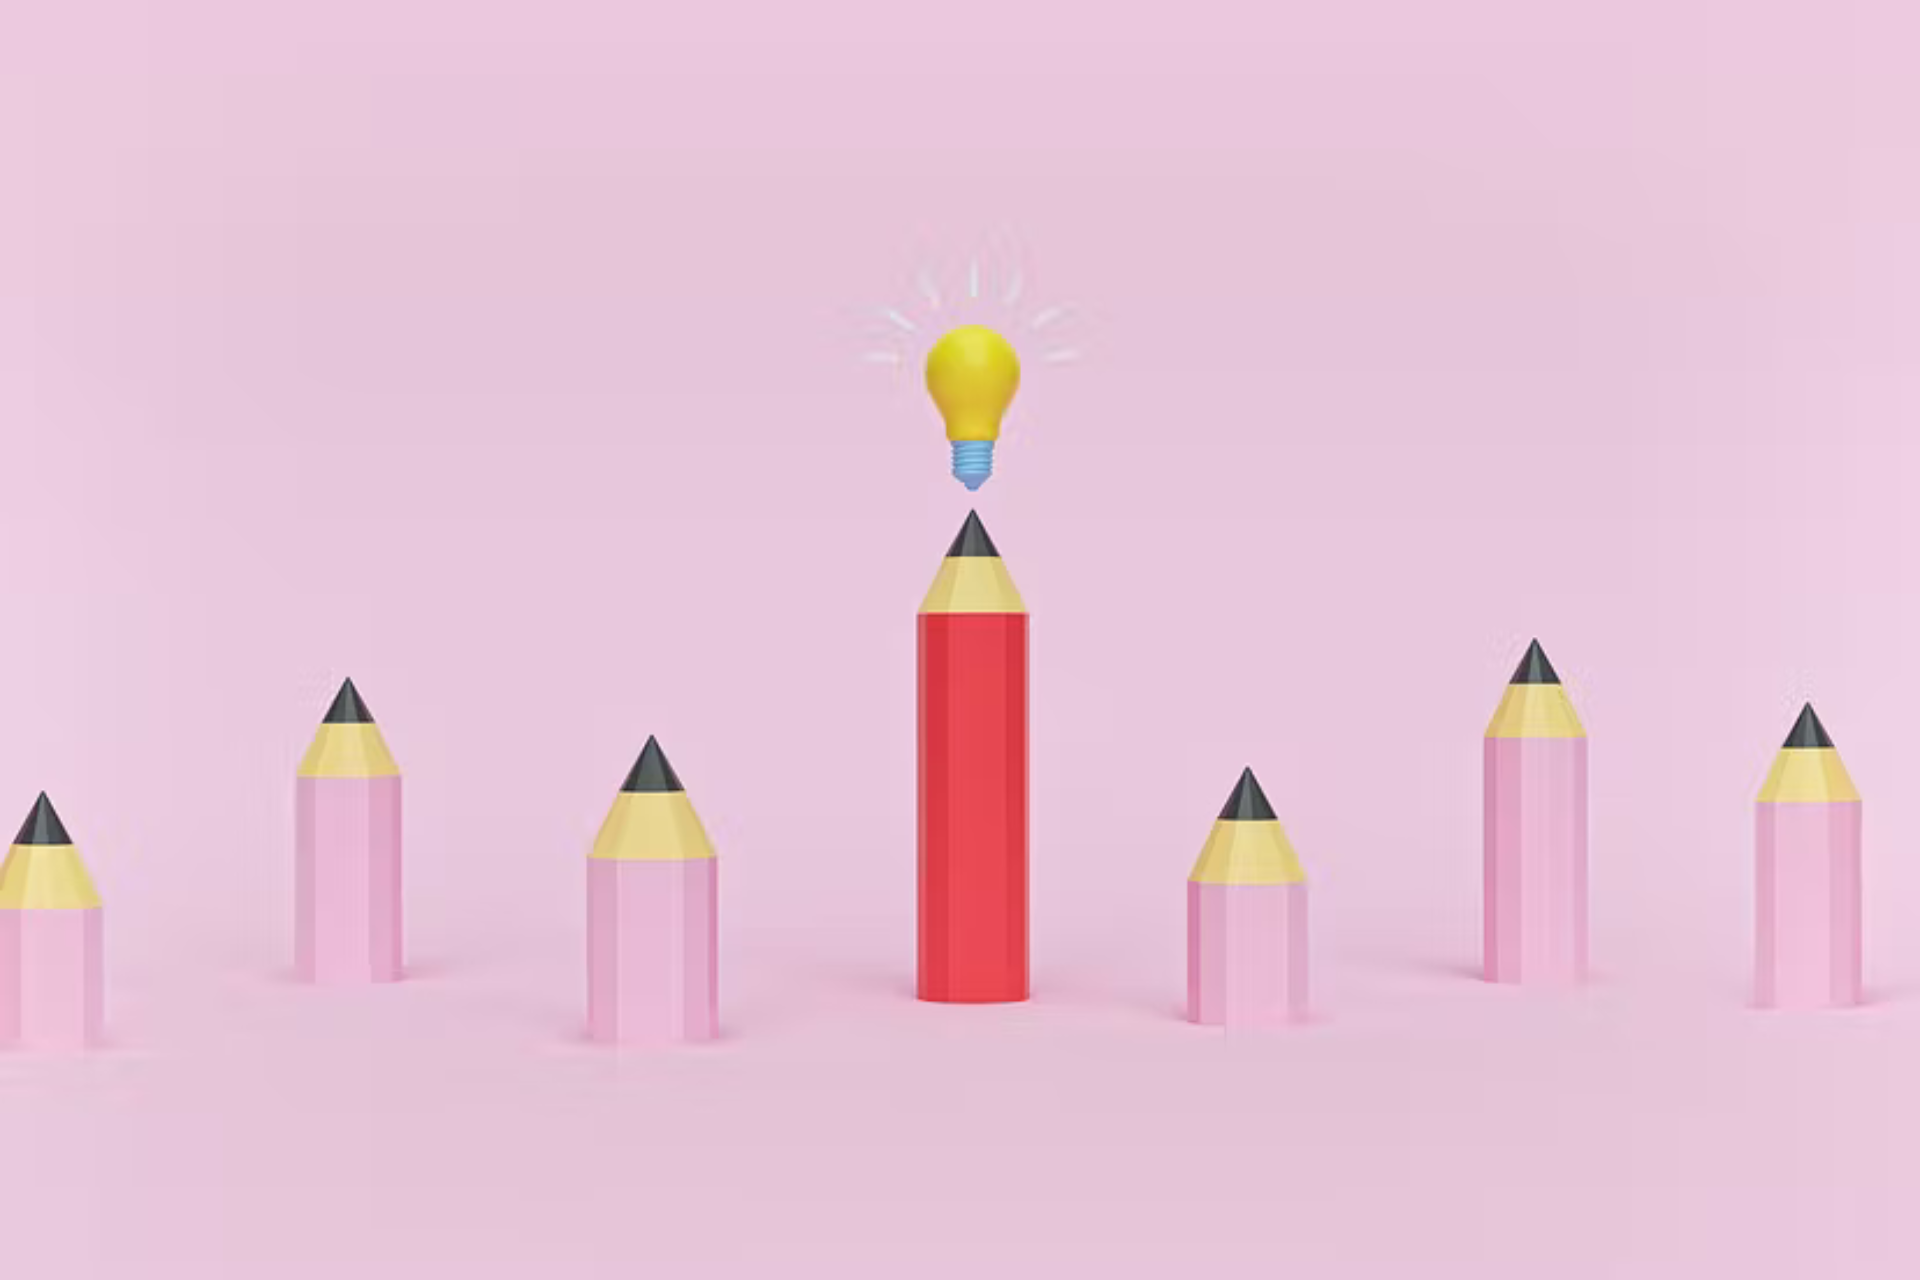 3D Illustration von Stiften, bei denen einer anders ist als die anderen und eine Glühbirne über sich hat. Das ist das Titelbild zu unserem Beitrag zur Zielgruppenanalyse